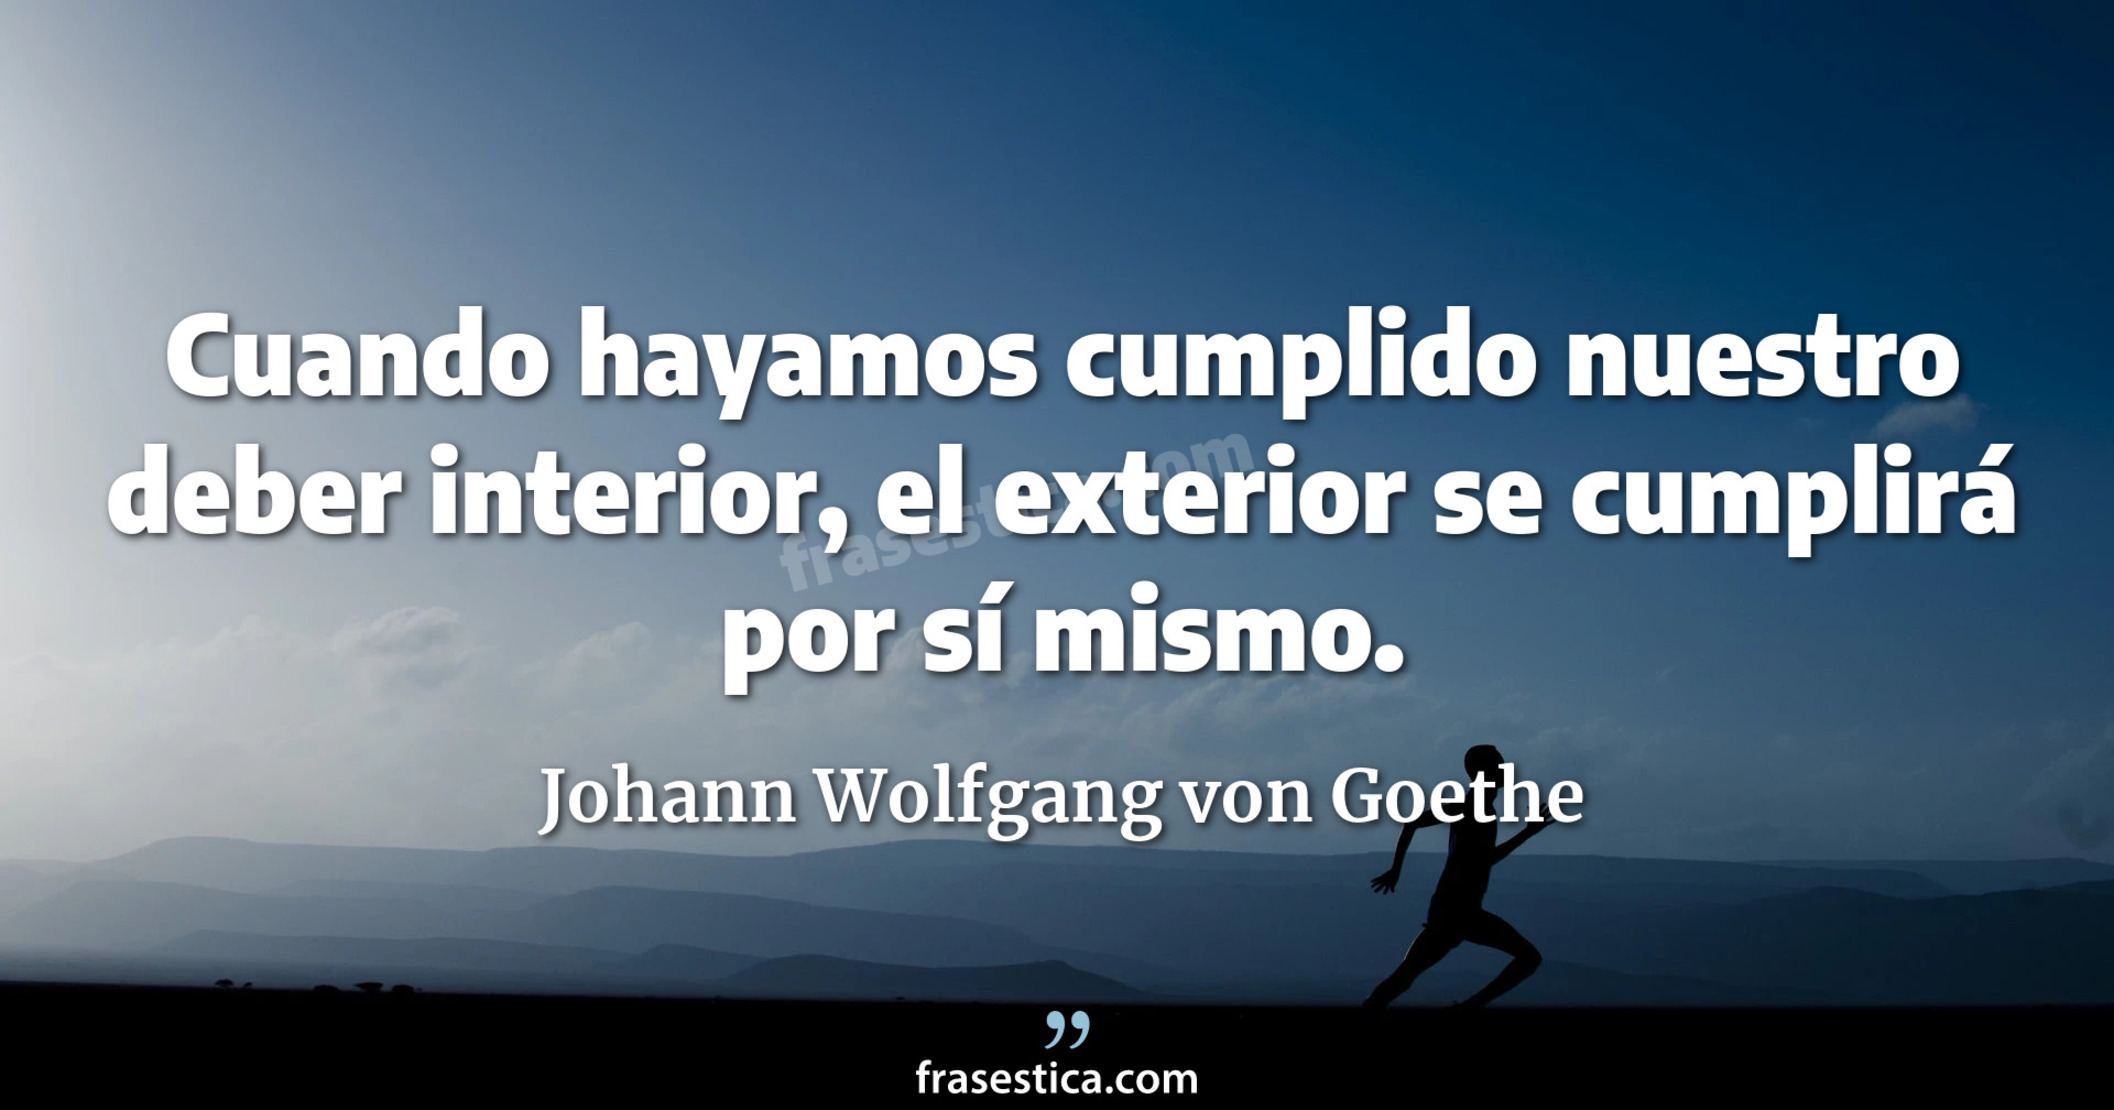 Cuando hayamos cumplido nuestro deber interior, el exterior se cumplirá por sí mismo. - Johann Wolfgang von Goethe